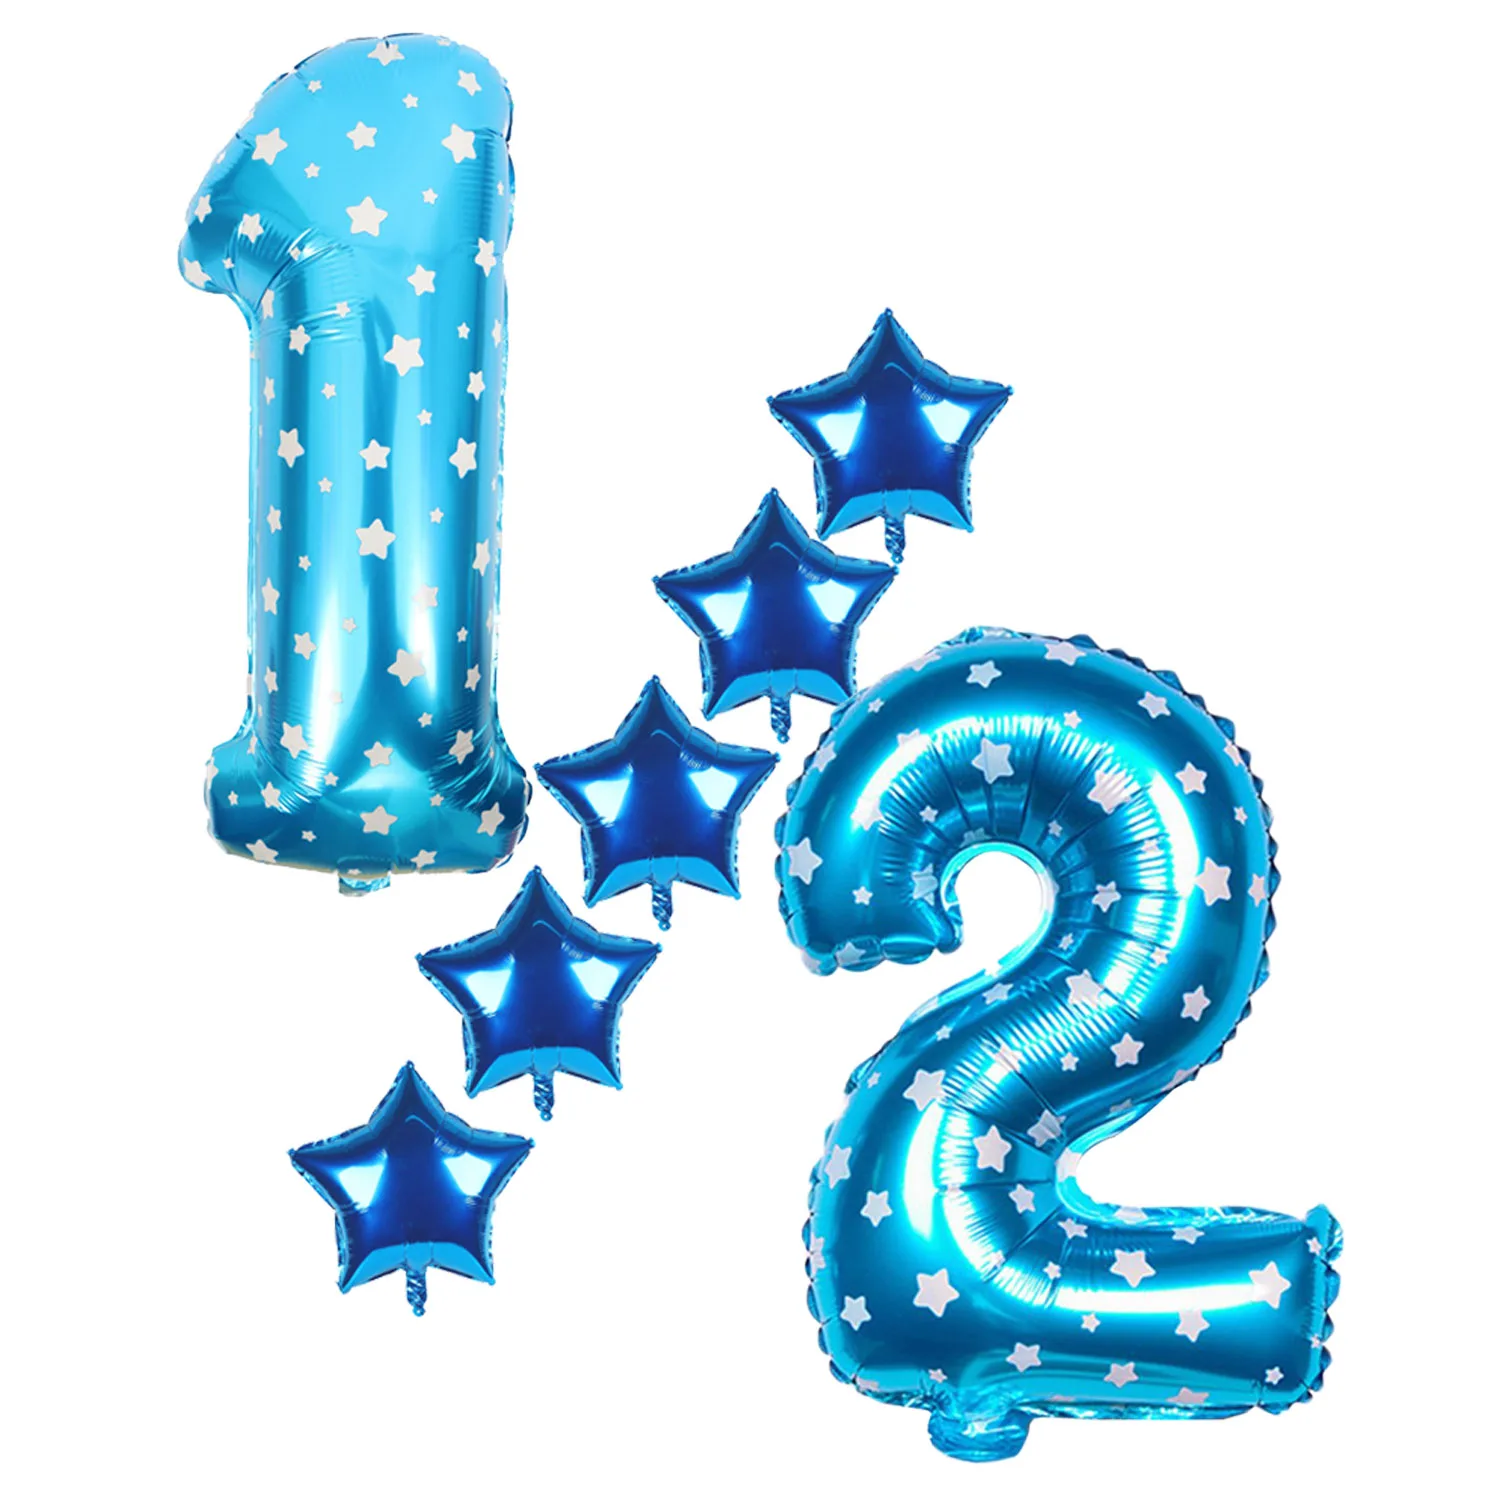 Amawill 1/2 год, голубые латексные воздушные шары на день рождения, 6 месяцев, баннеры на день рождения, украшения для девочек/мальчиков, 7D